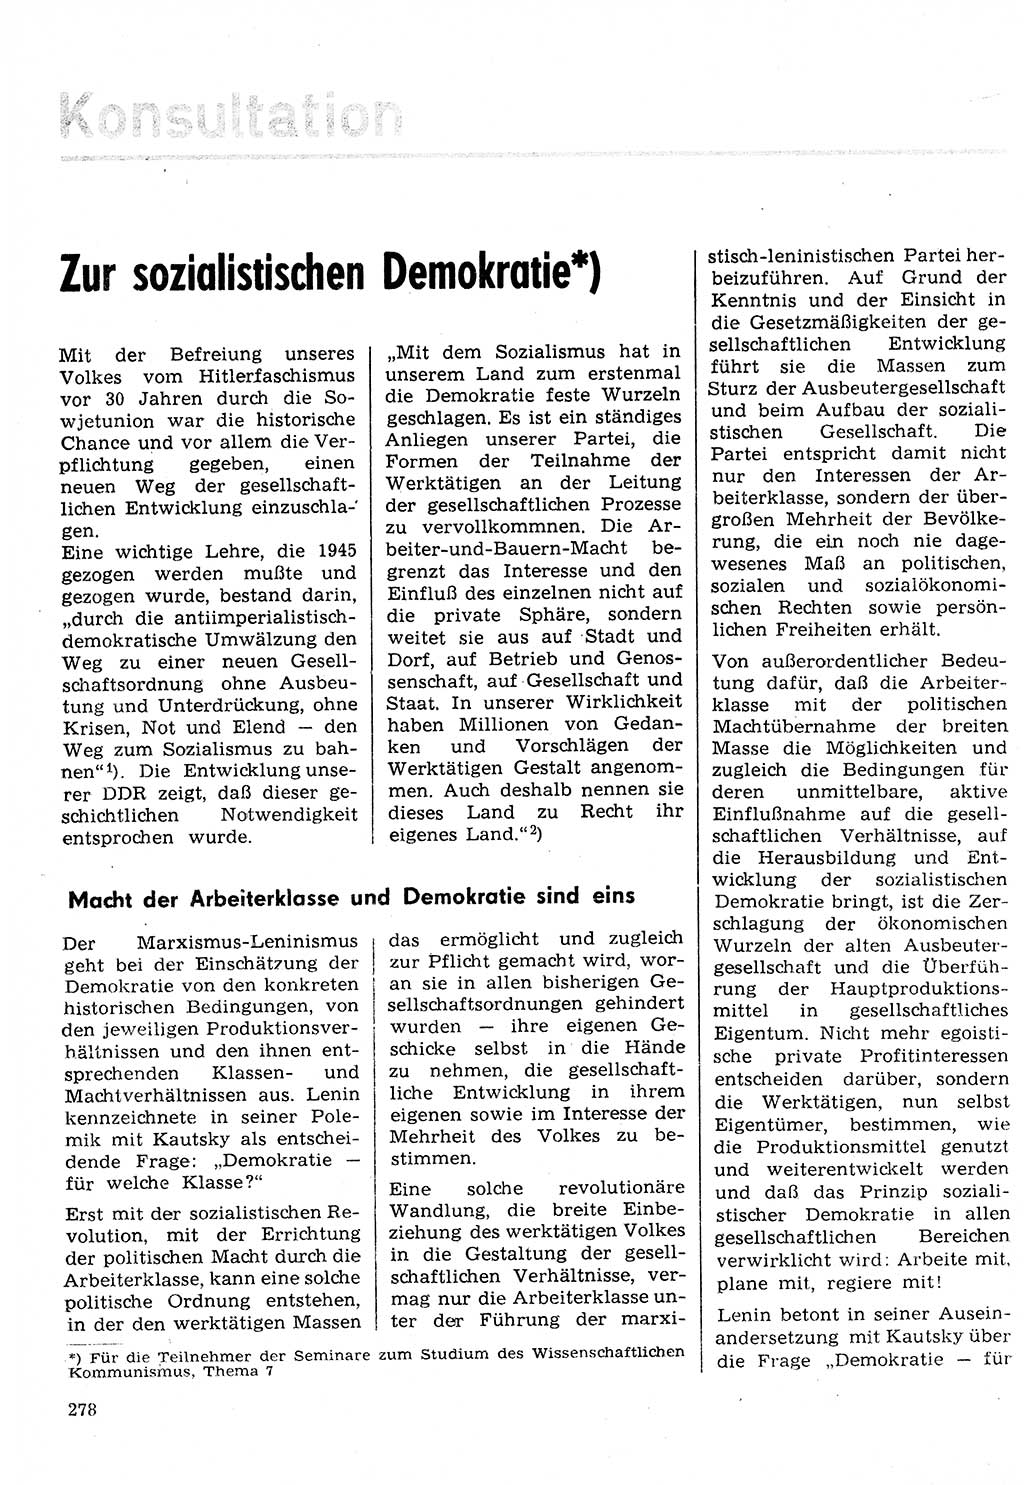 Neuer Weg (NW), Organ des Zentralkomitees (ZK) der SED (Sozialistische Einheitspartei Deutschlands) für Fragen des Parteilebens, 30. Jahrgang [Deutsche Demokratische Republik (DDR)] 1975, Seite 278 (NW ZK SED DDR 1975, S. 278)